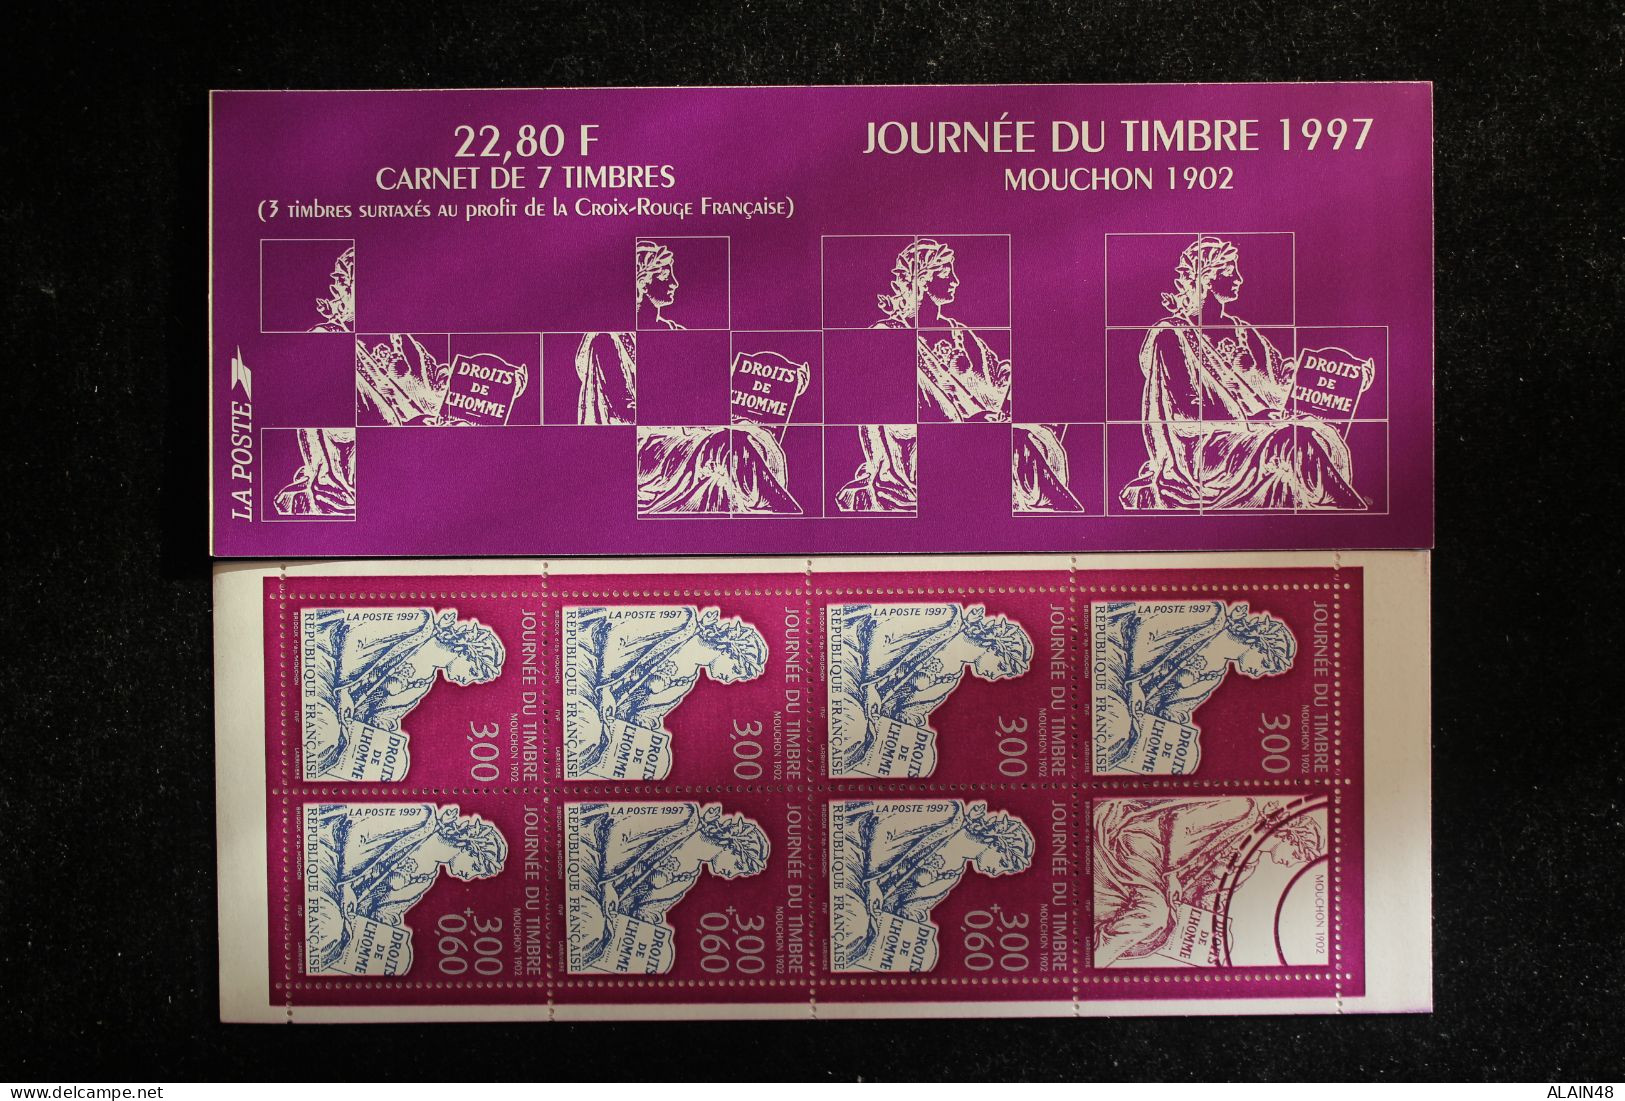 FRANCE 1997 CARNET BC3053 JOURNEE DU TIMBRE NEUFS** NON PLIE TTB MOUCHON 1902 - Dag Van De Postzegel